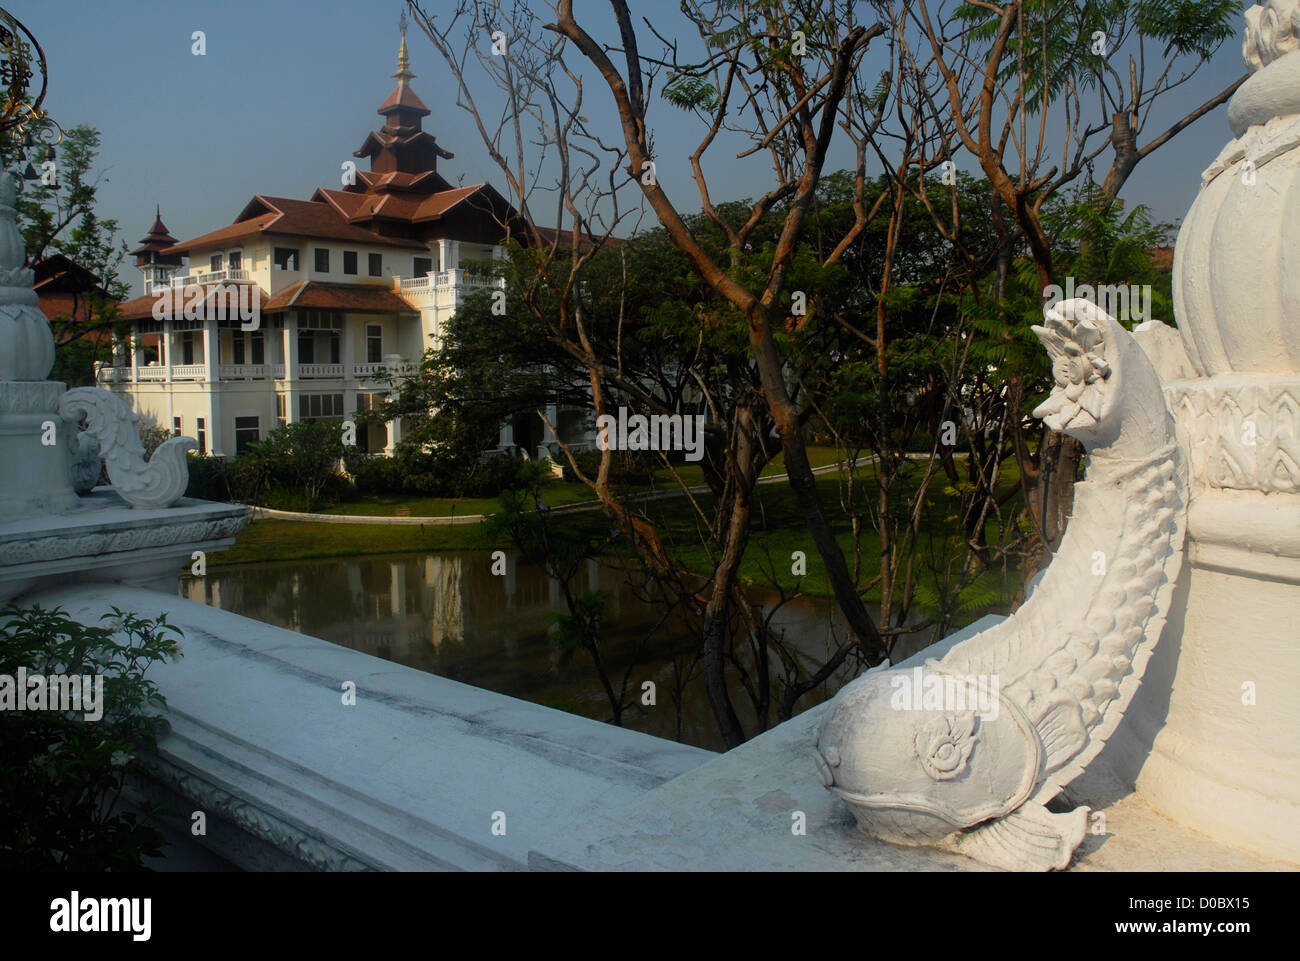 Fountain, Lanna, Hotel, Dhara Devi, Mandarin Oriental, Chiang Mai, Thailand, Asia Stock Photo